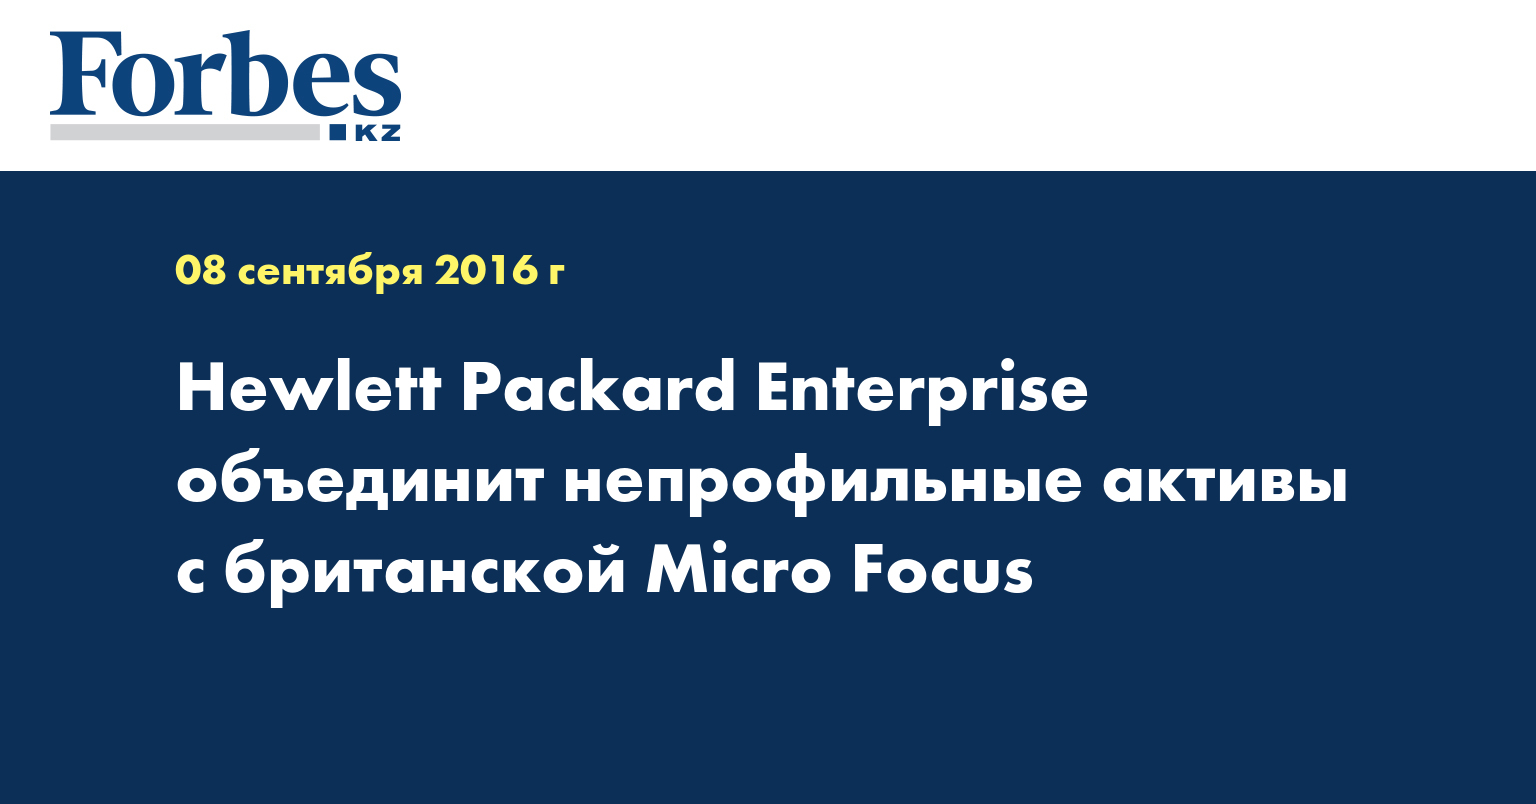 Hewlett Packard Enterprise объединит непрофильные активы с британской Micro Focus